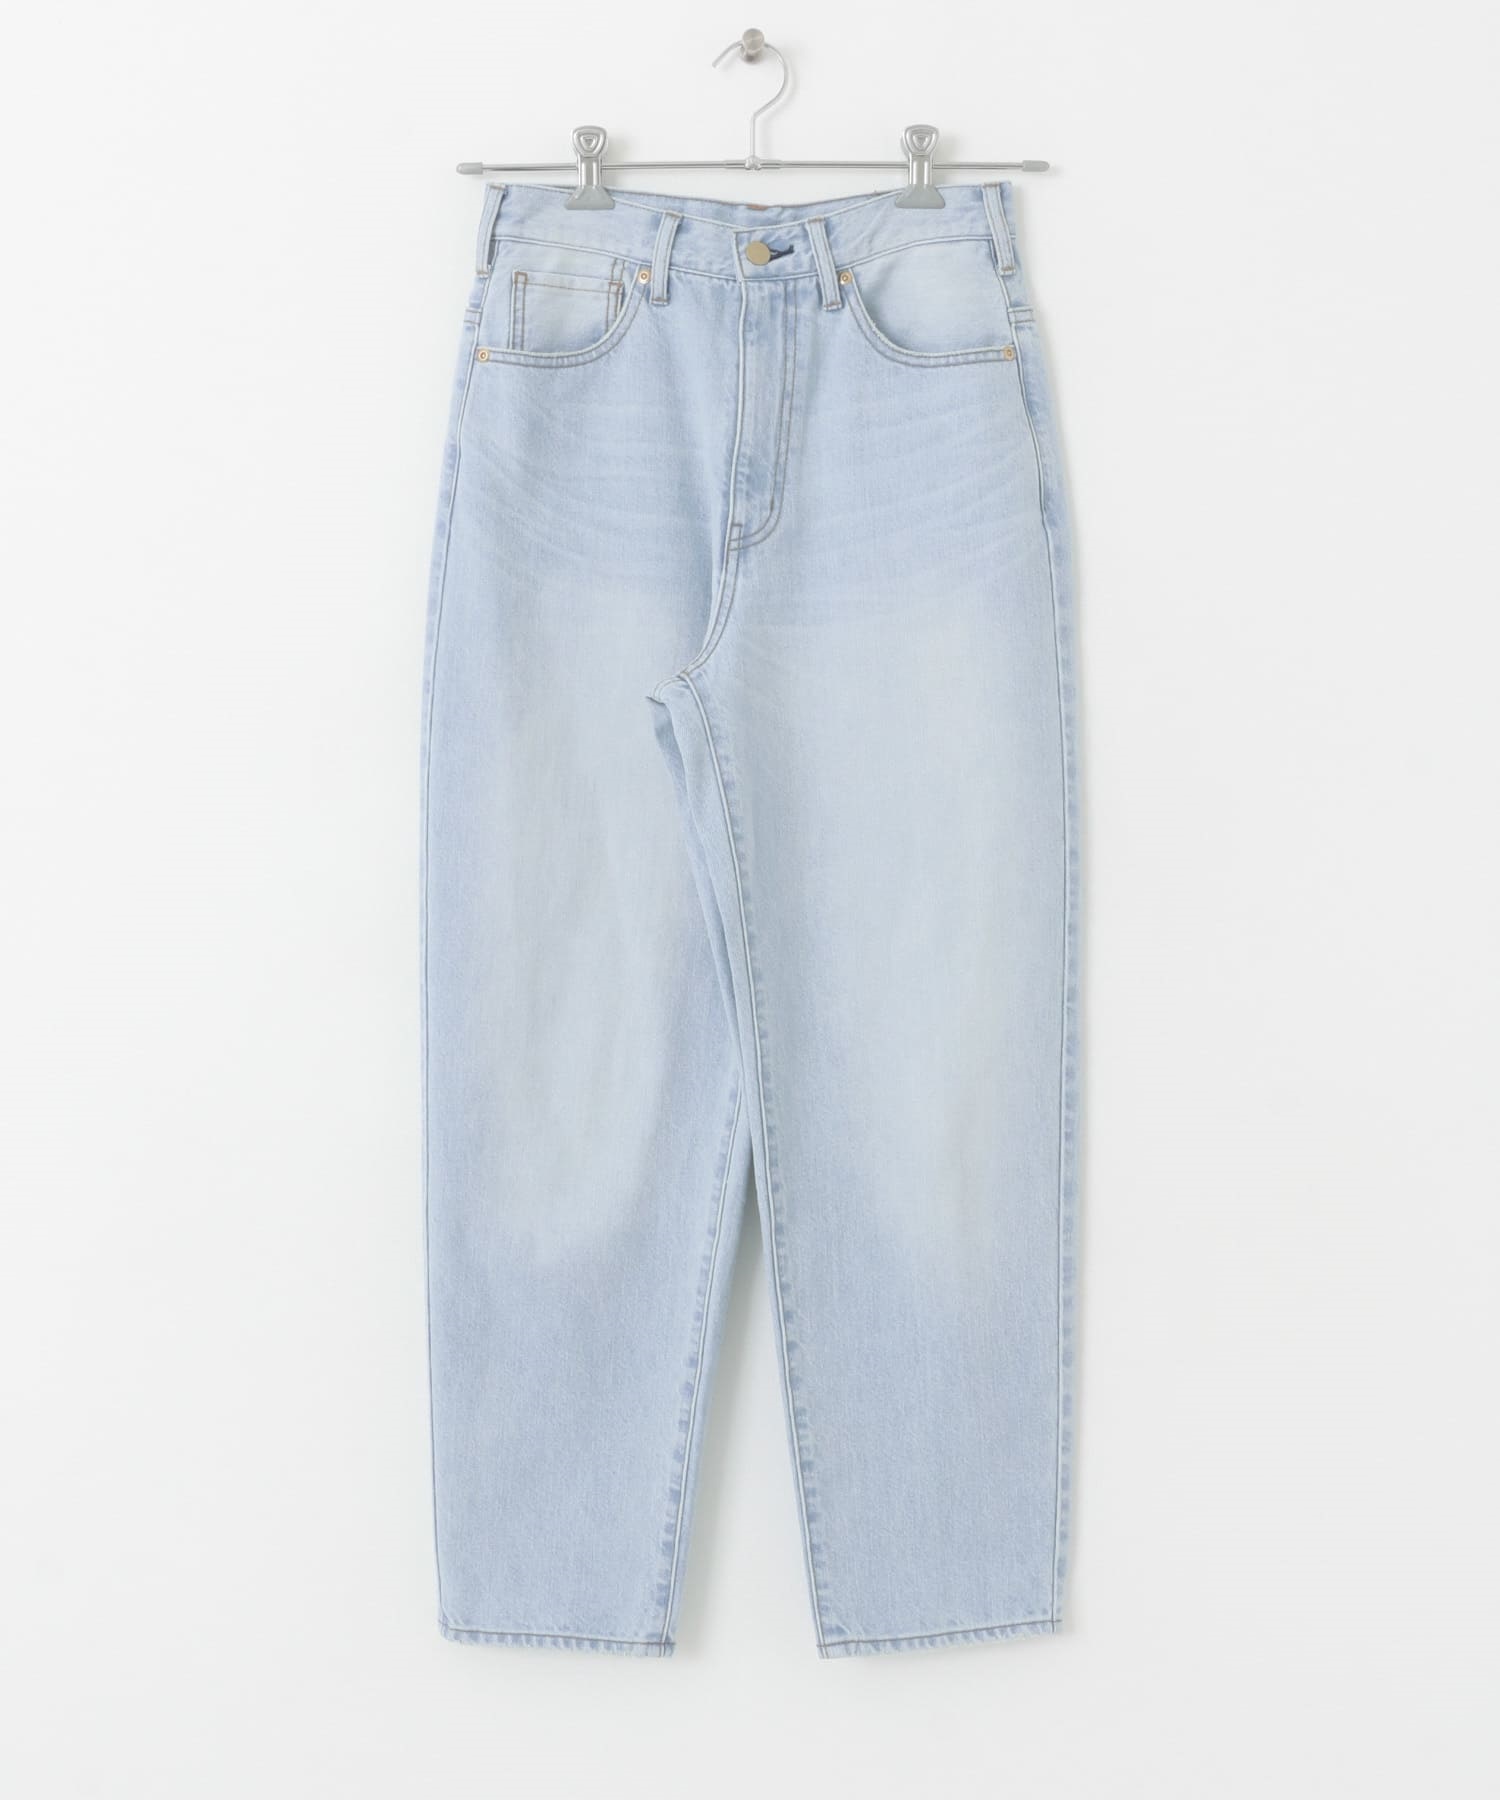 錐形牛仔褲(淺藍色-36-LIGHT BLUE)